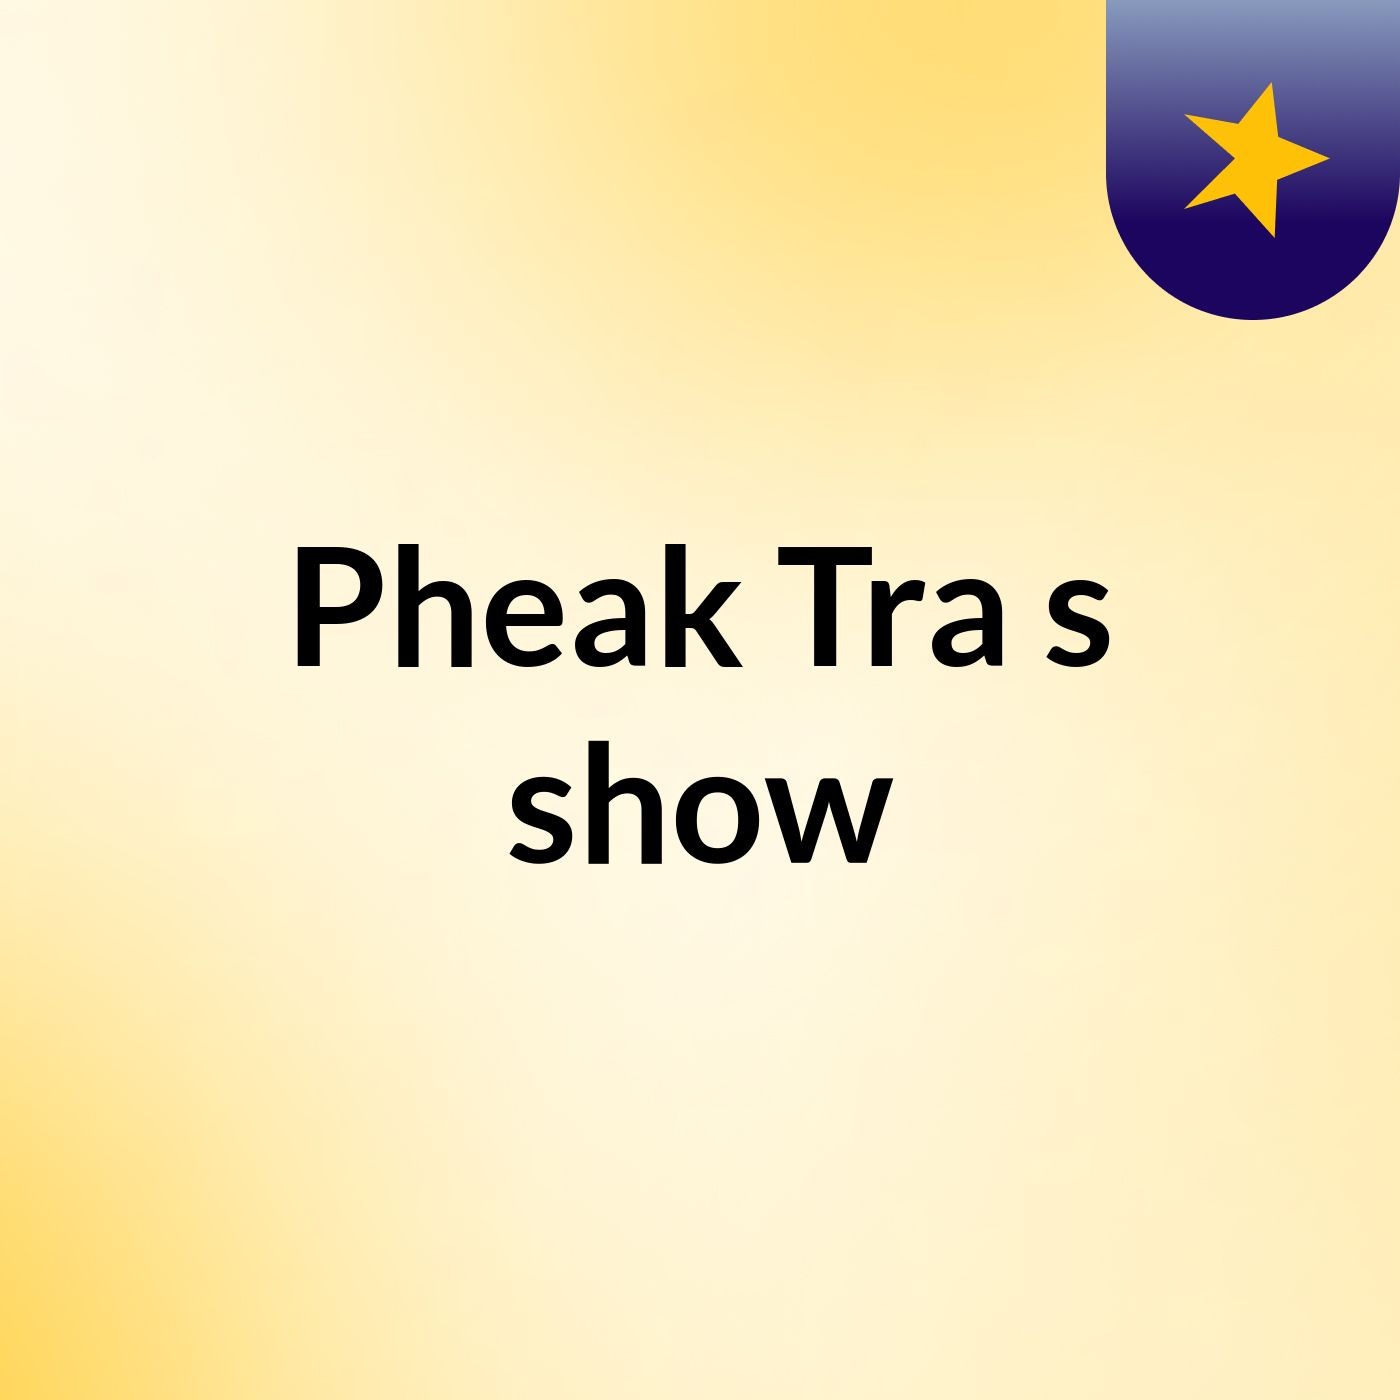 Pheak Tra's show